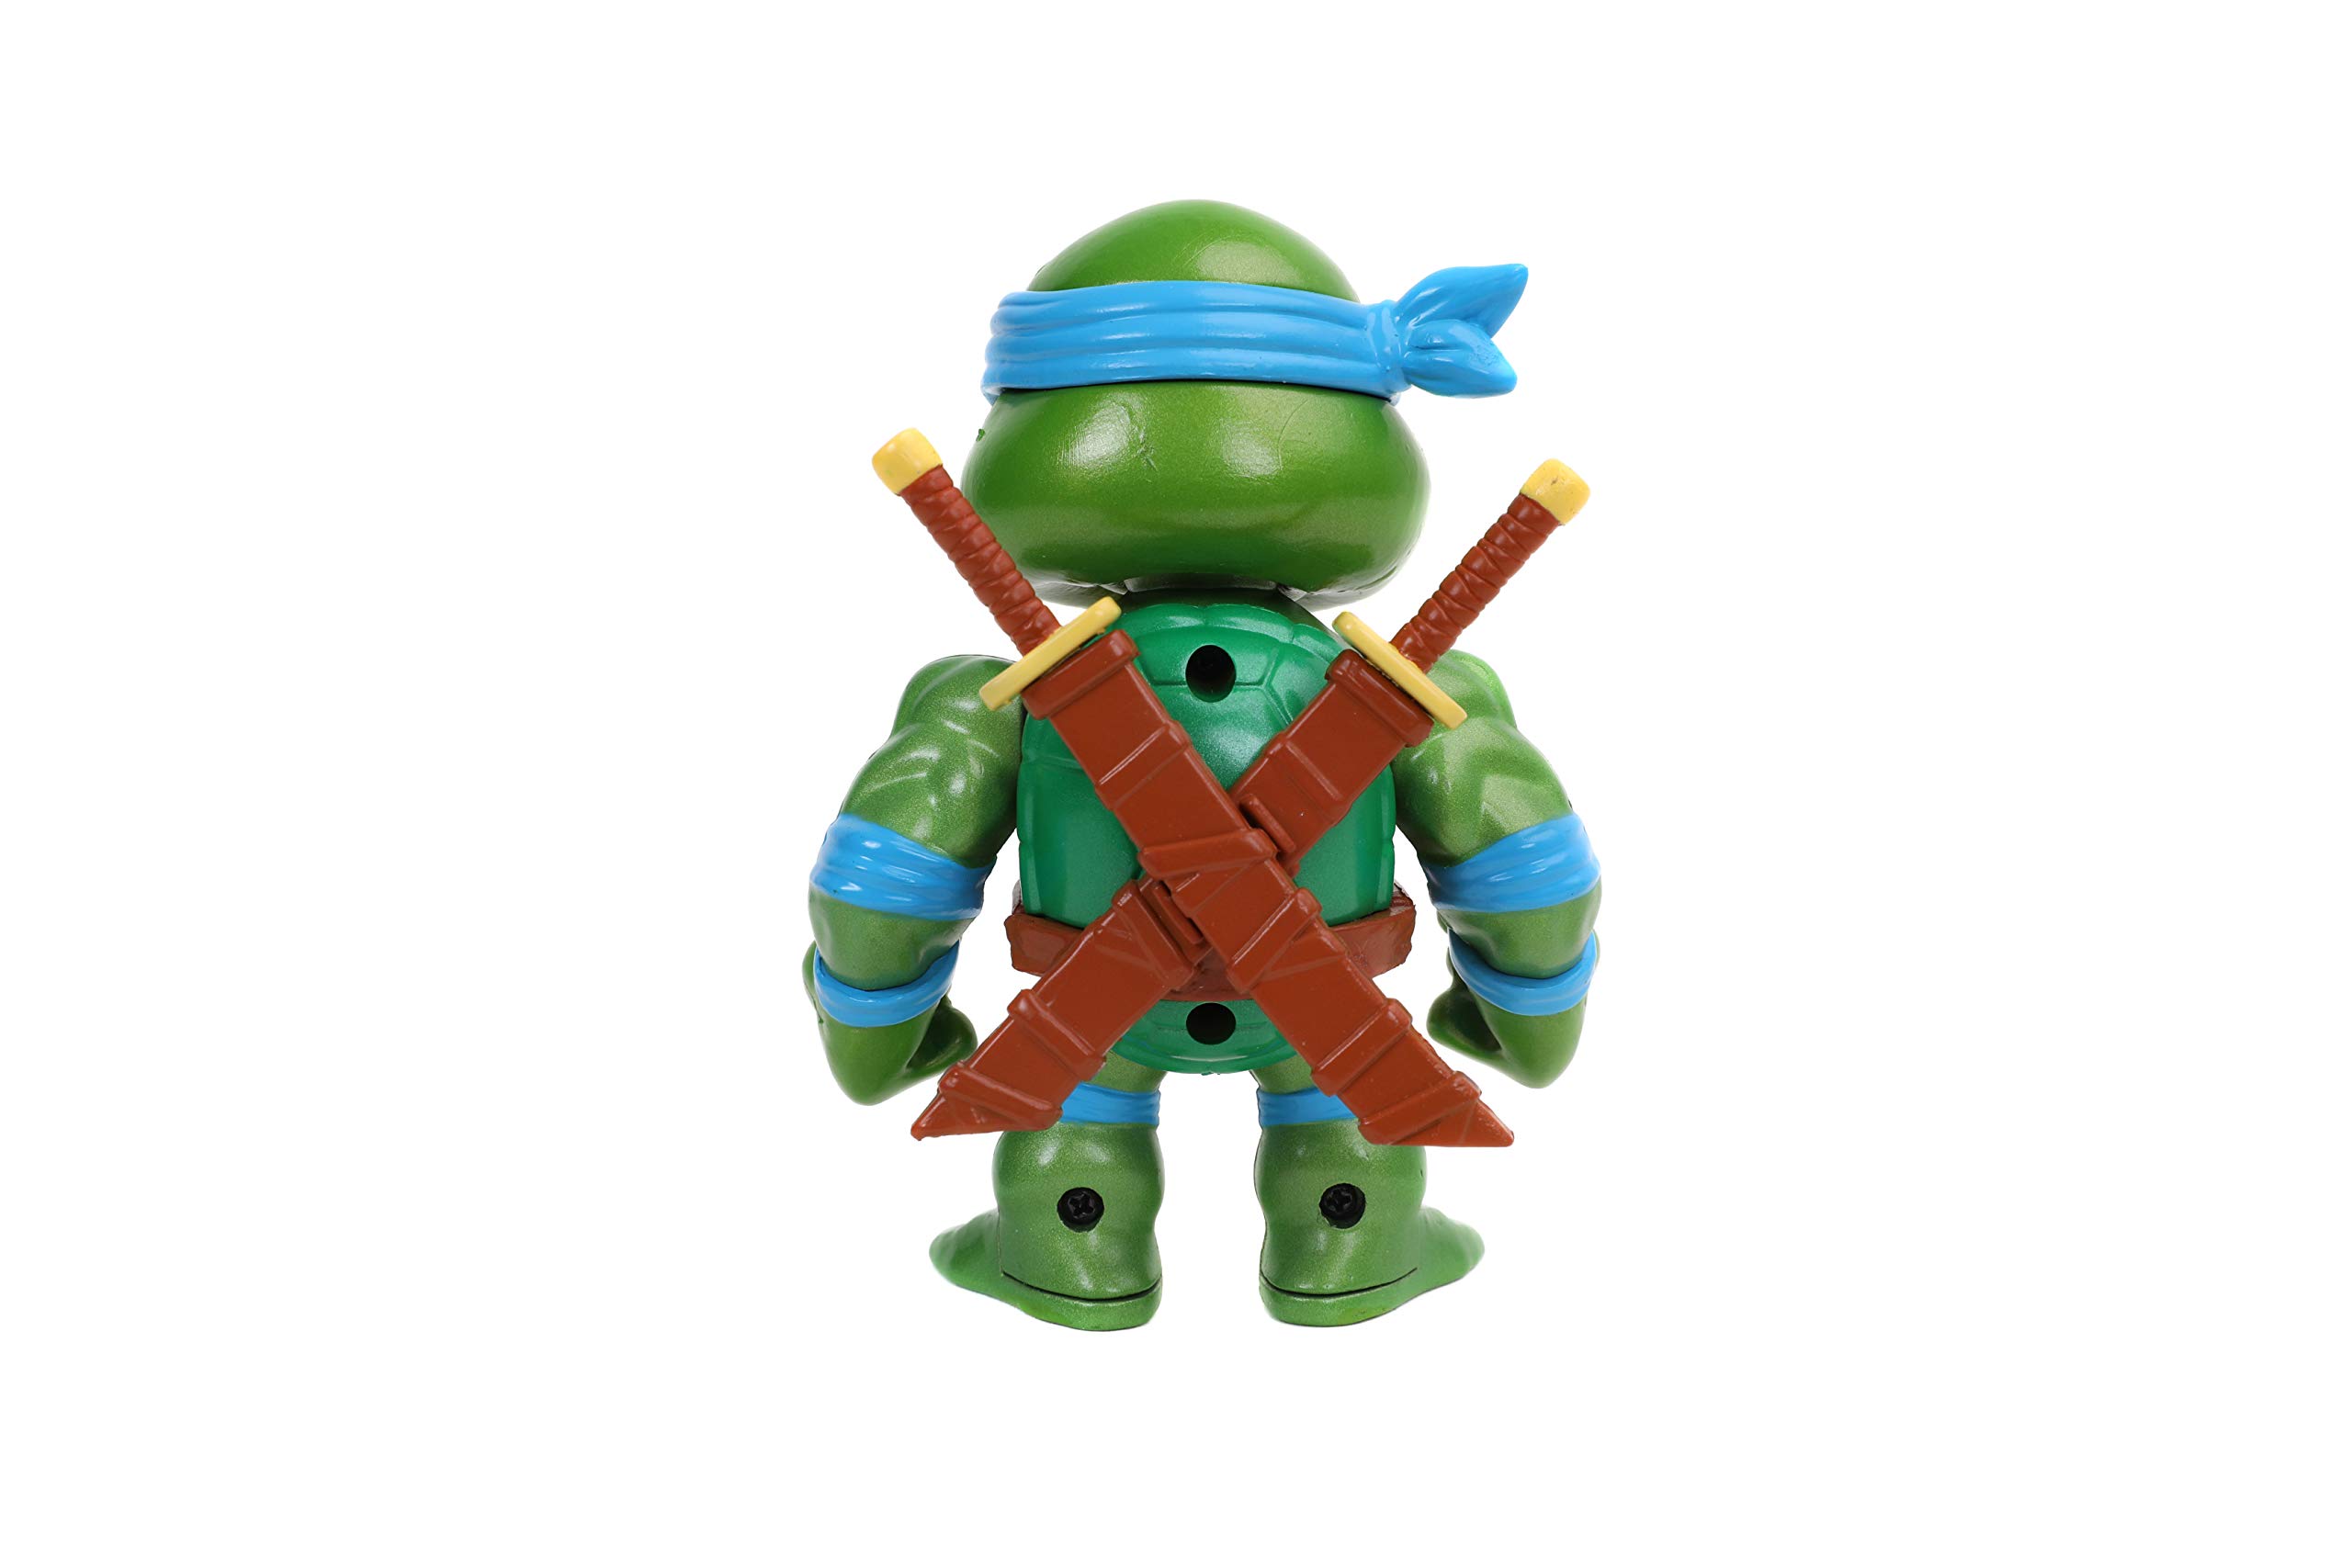 Jada Toys Teenage Mutant Ninja Turtles 4 Leonardo Die-cast Figure, Toys for Kids and Adults, Blue